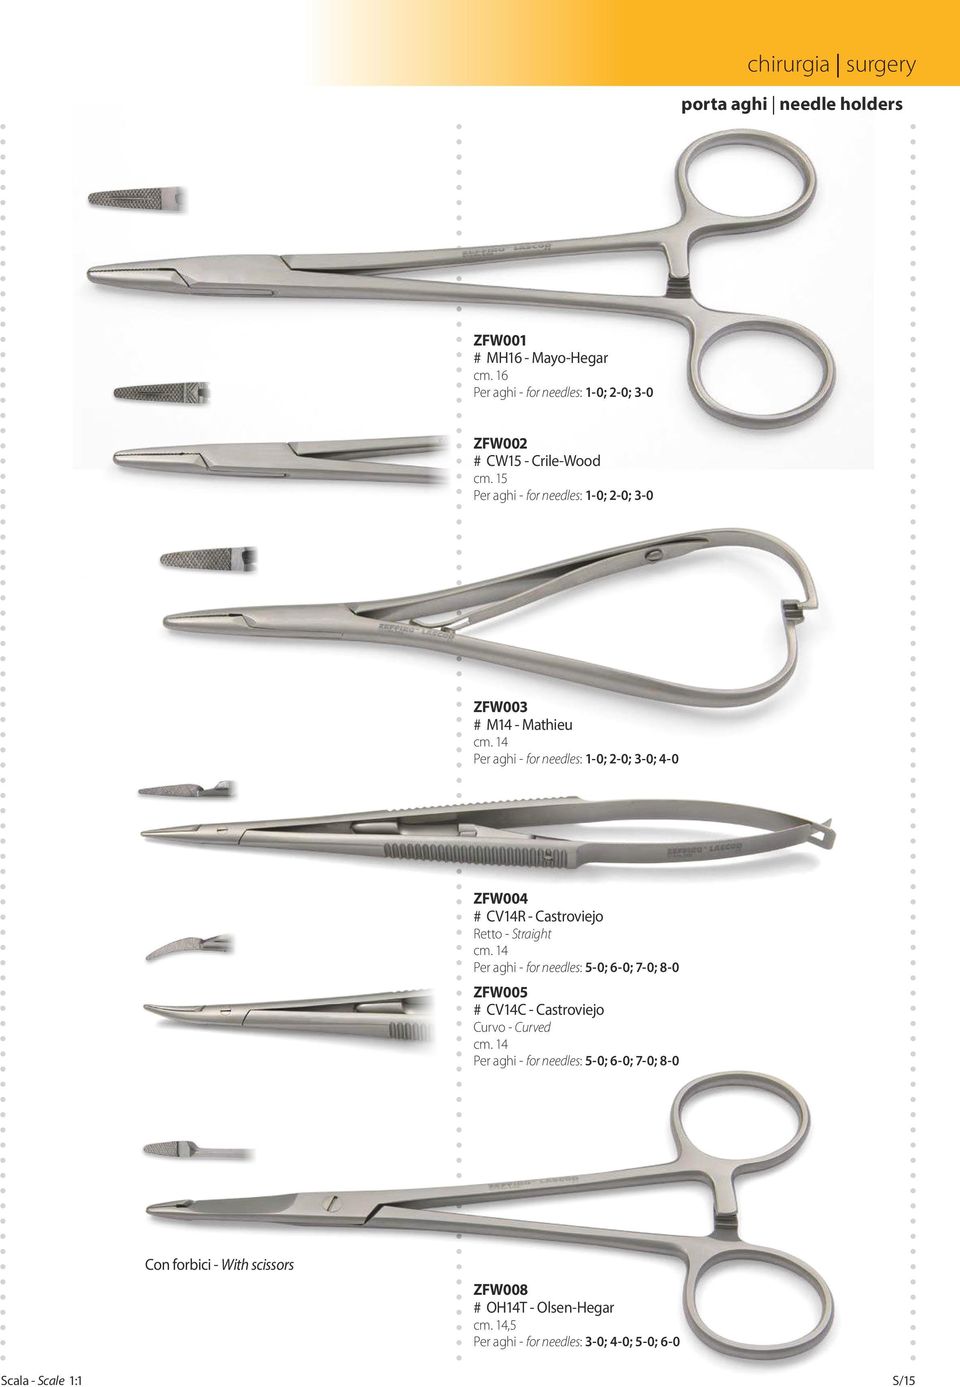 14 Per aghi - for needles: 1-0; 2-0; 3-0; 4-0 ZFW004 # CV14R - Castroviejo Retto - Straight cm.